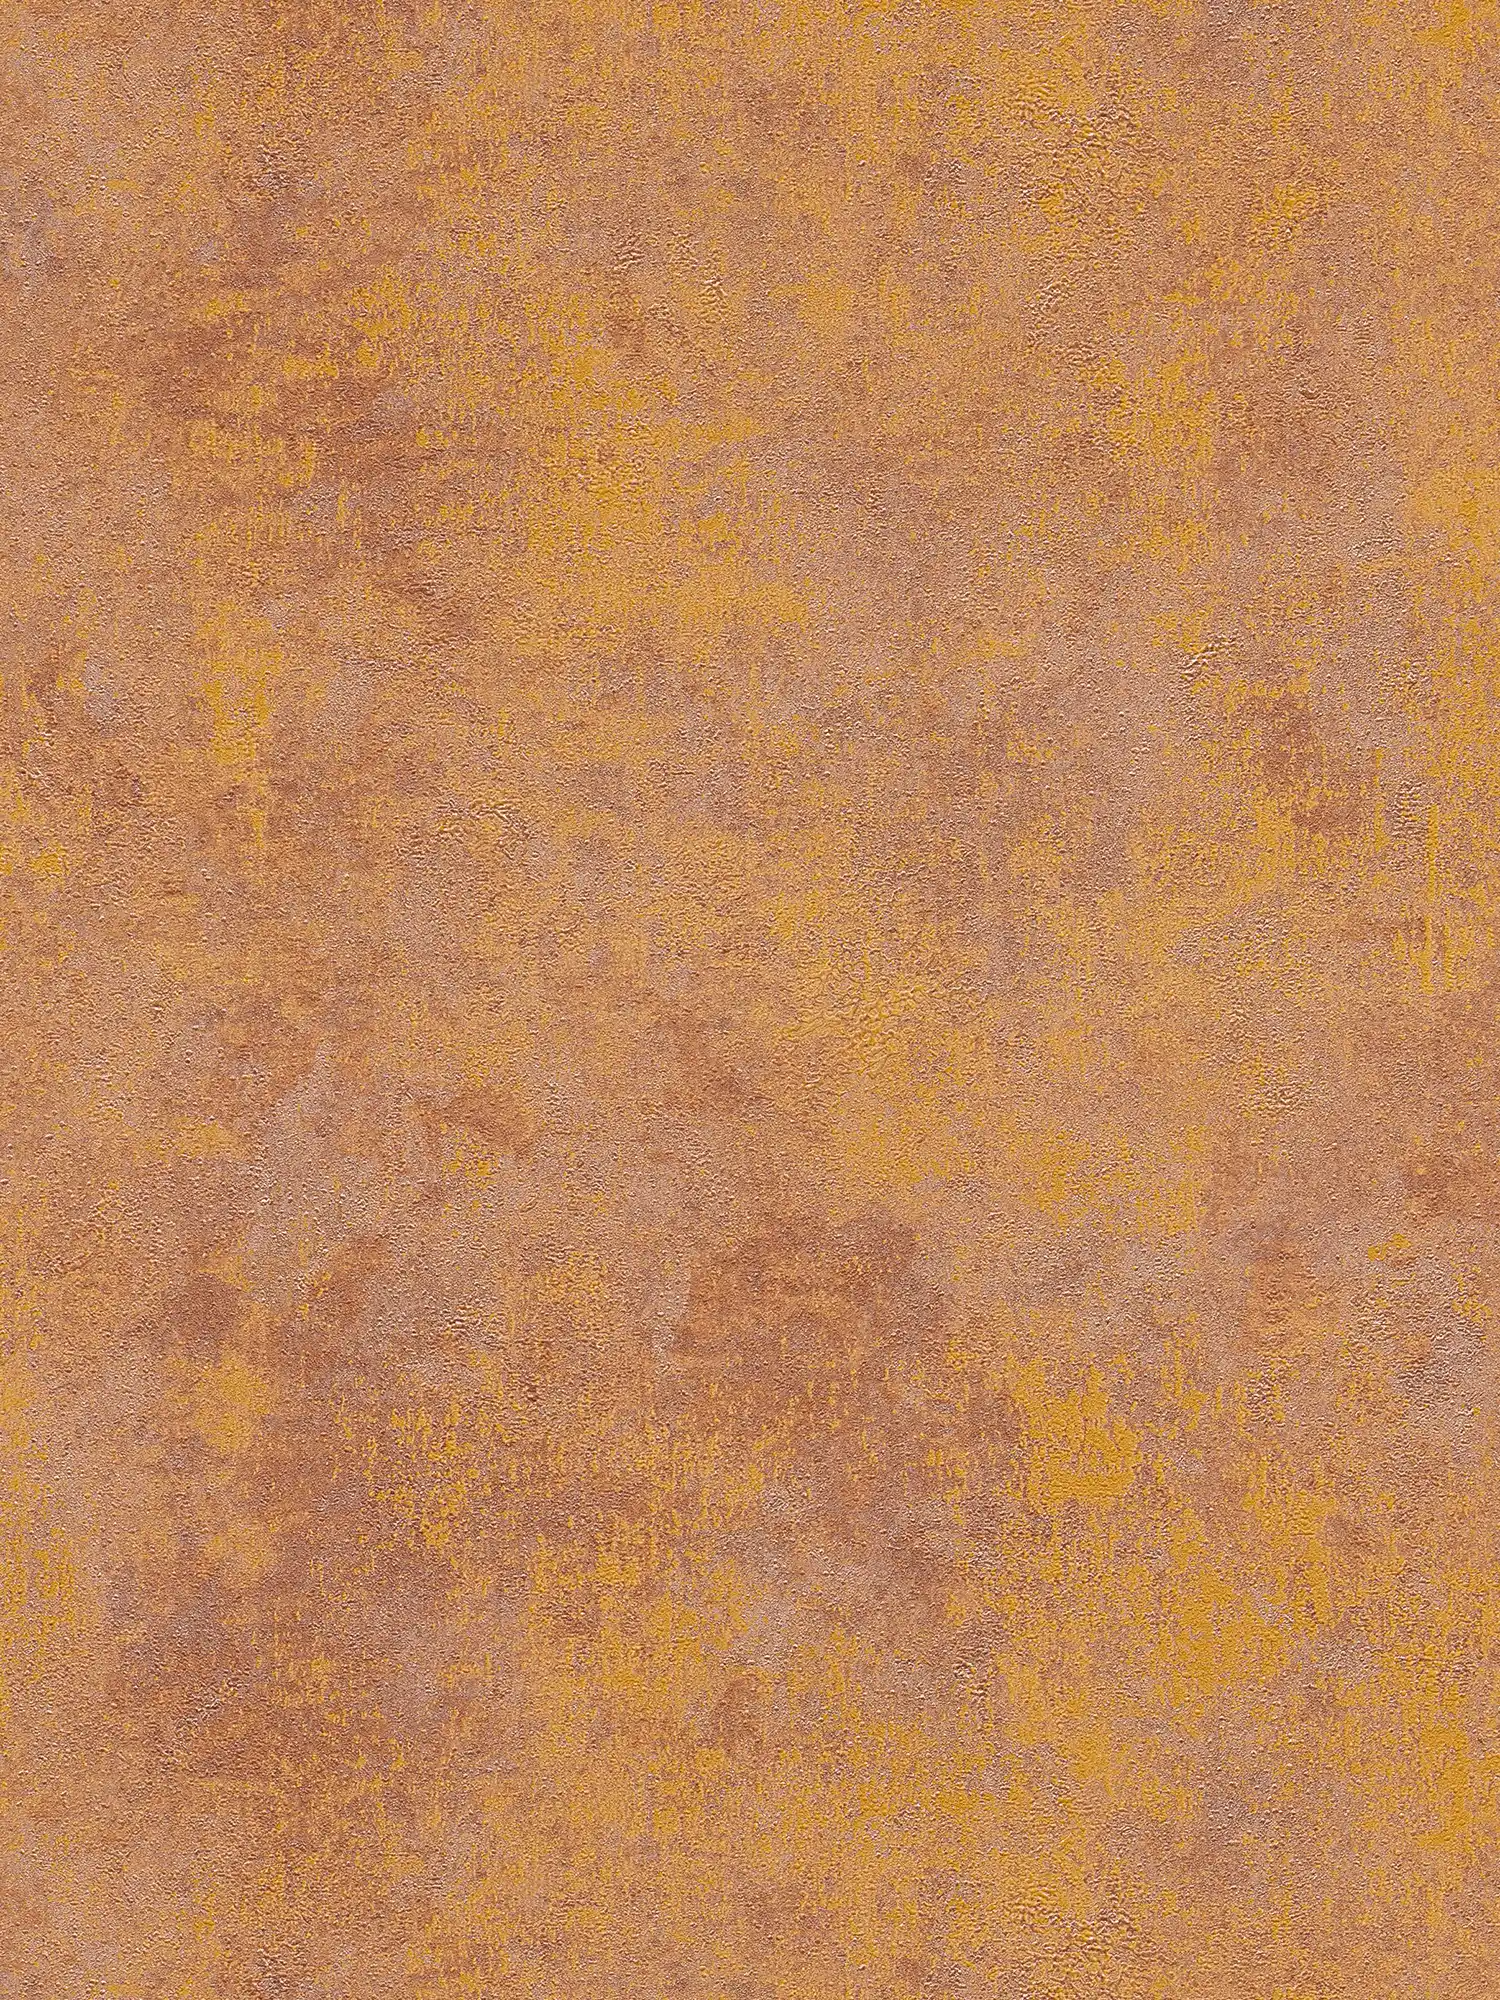         Vliestapete Rostoptik mit Glanz-Effekt – Orange, Kupfer, Braun
    